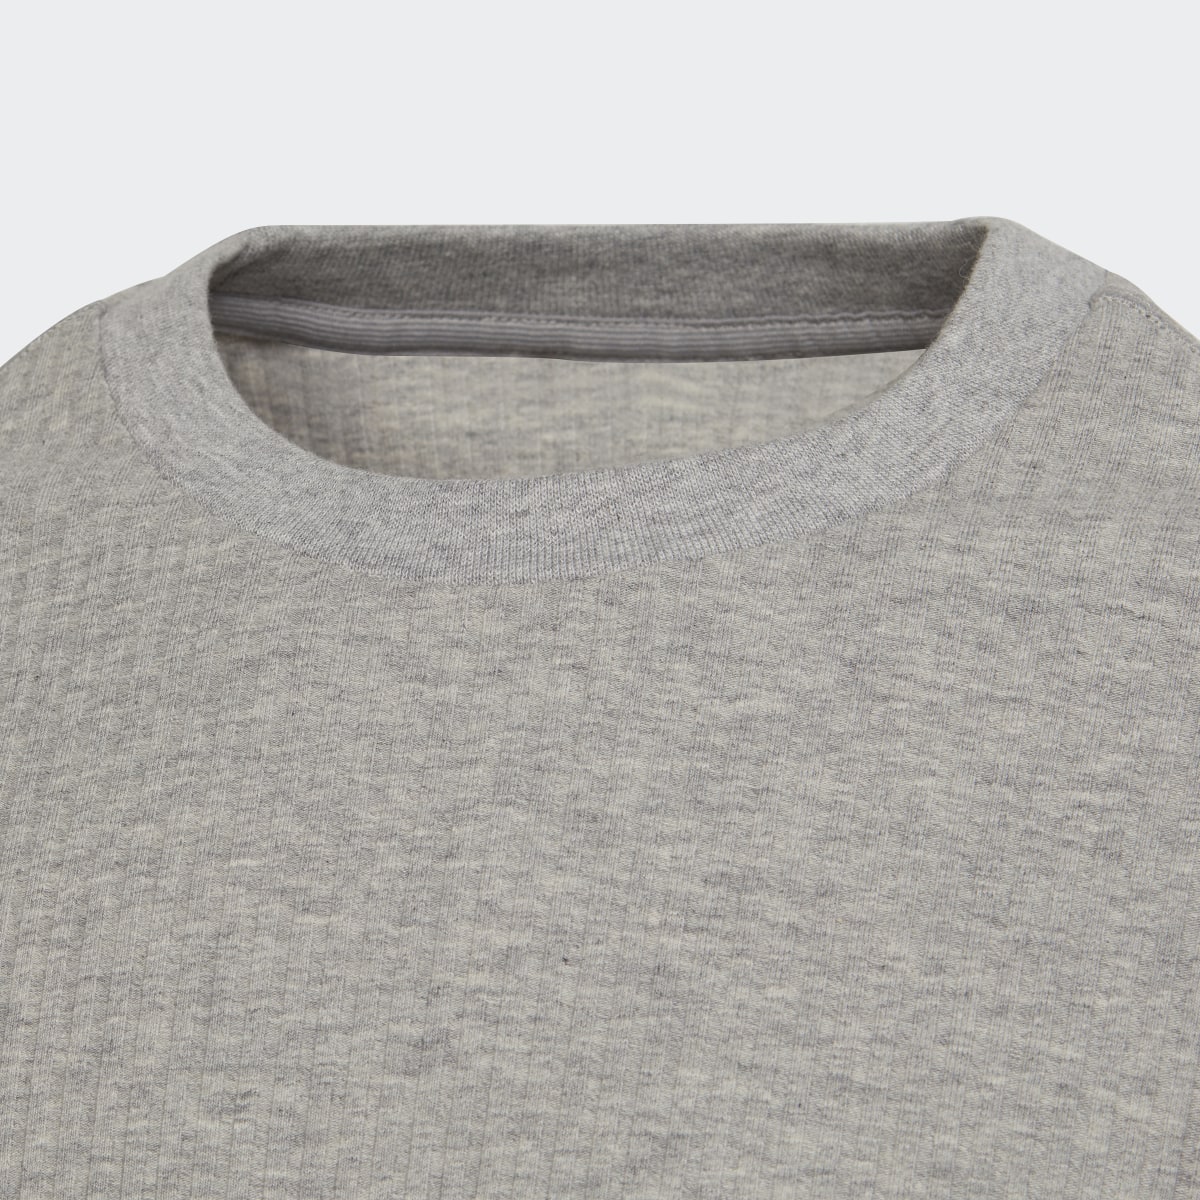 Adidas Yoga Lounge Cotton Comfort Sweatshirt. 5